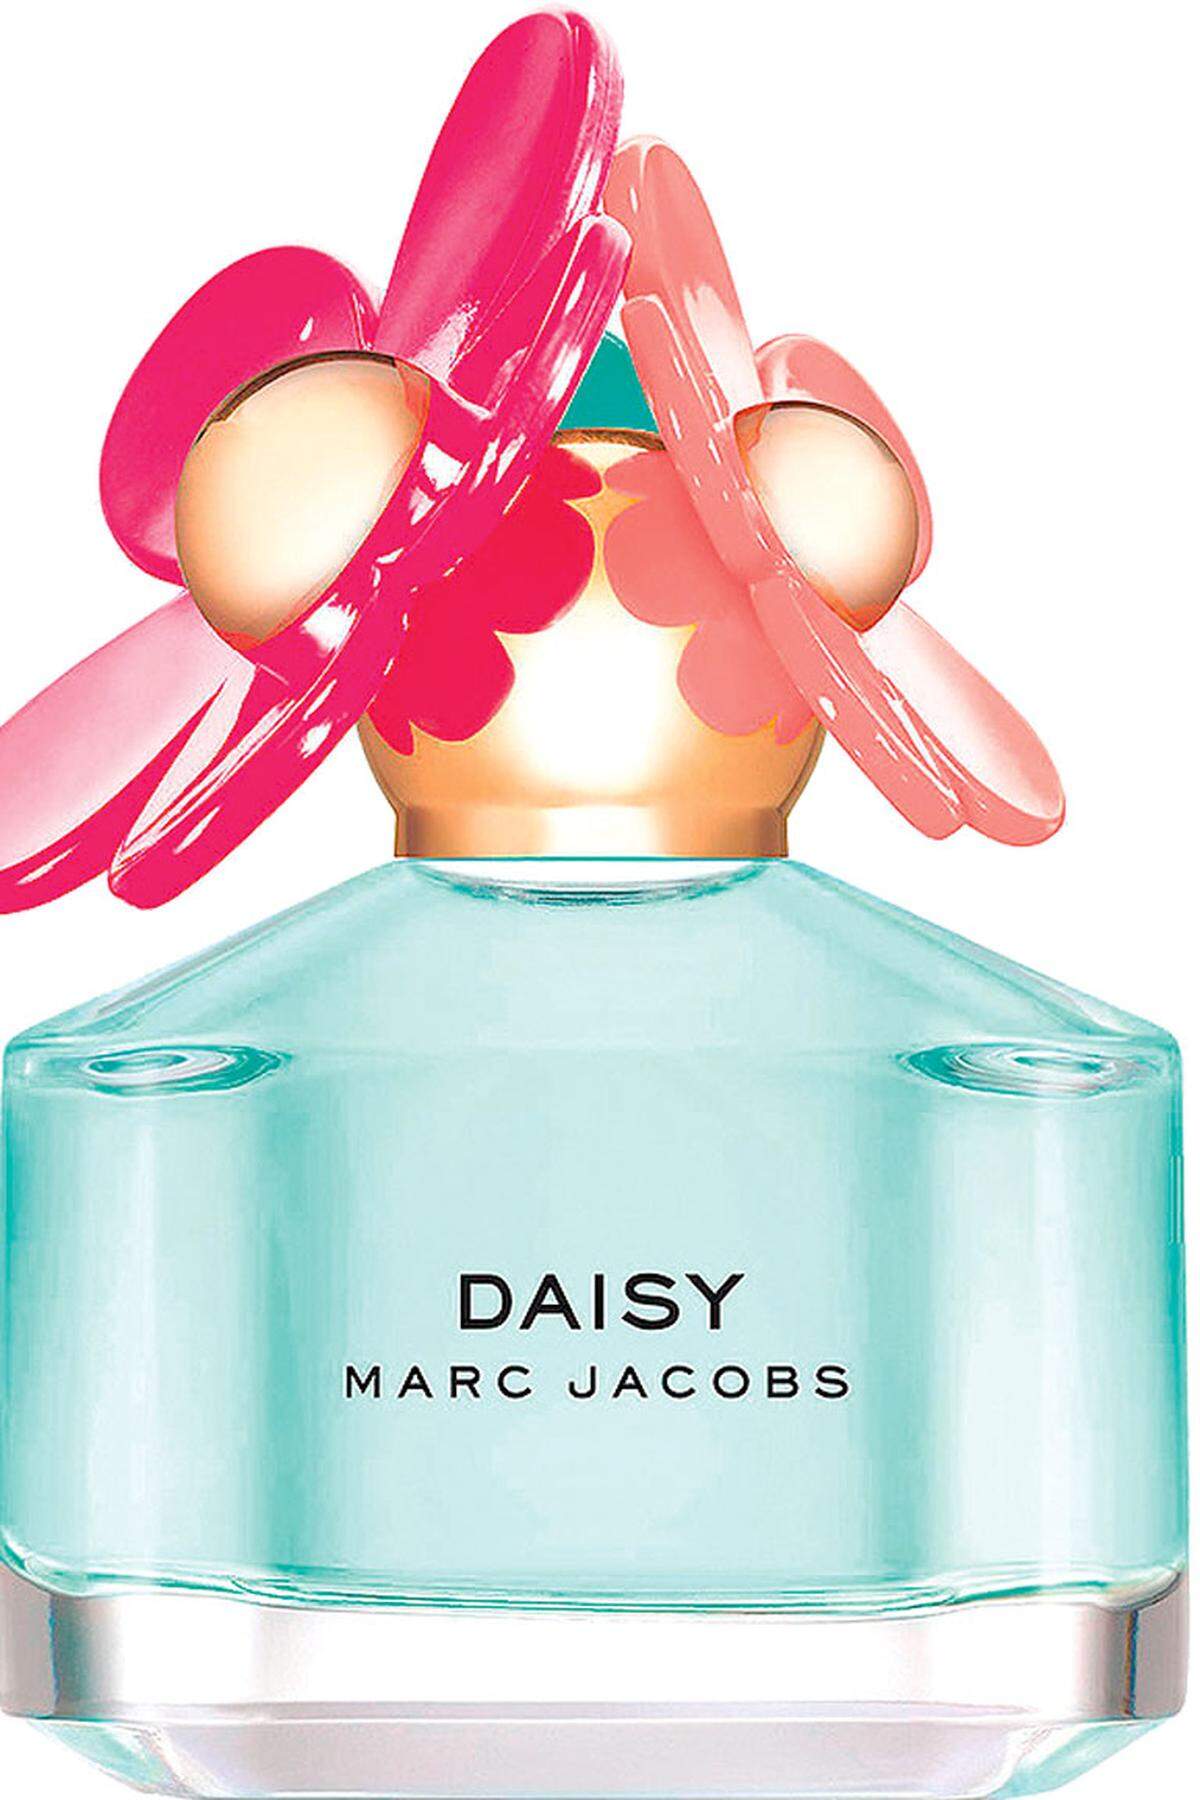 „Daisy Delight“, Marc Jacobs, 69,90 Euro, im ausgewählten Fachhandel